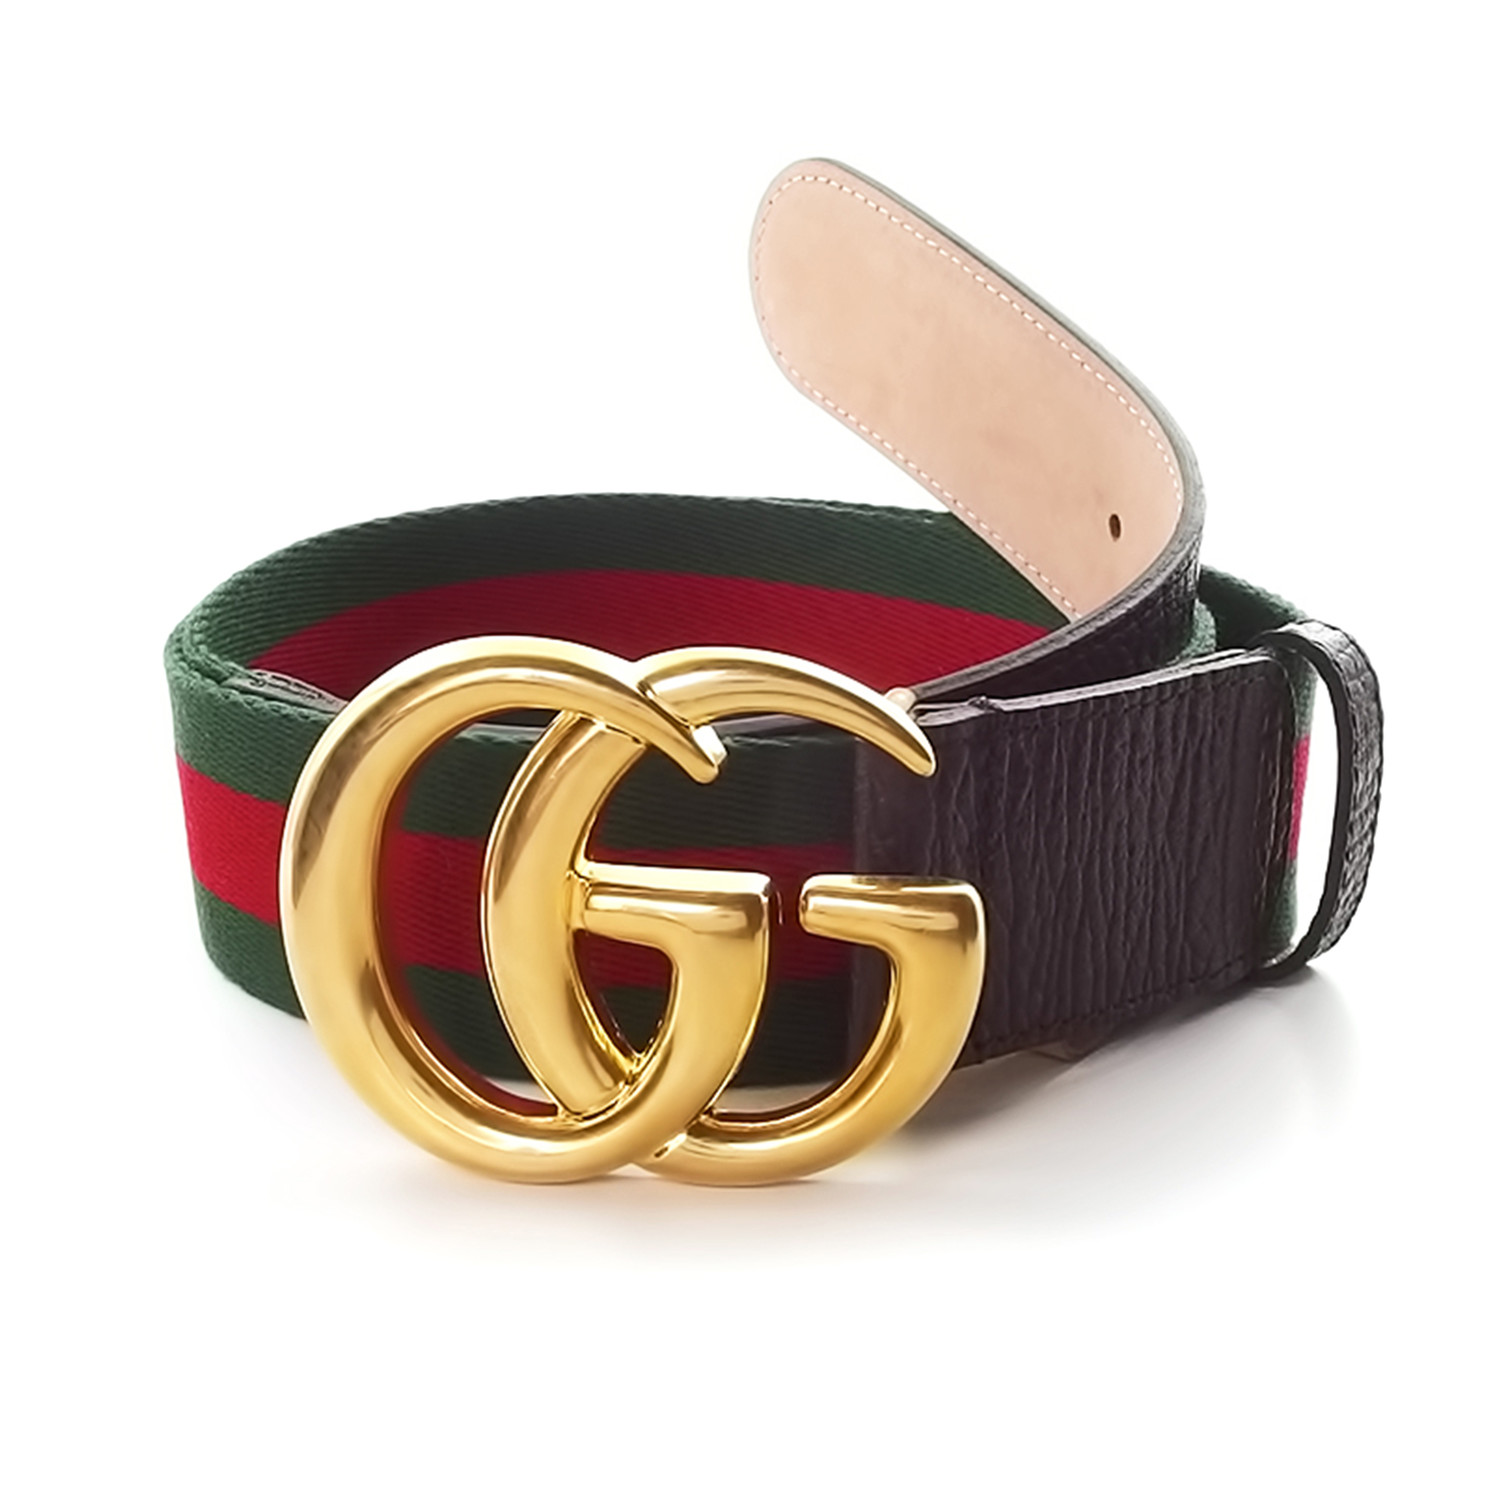 Big Gucci Belt | IQS Executive